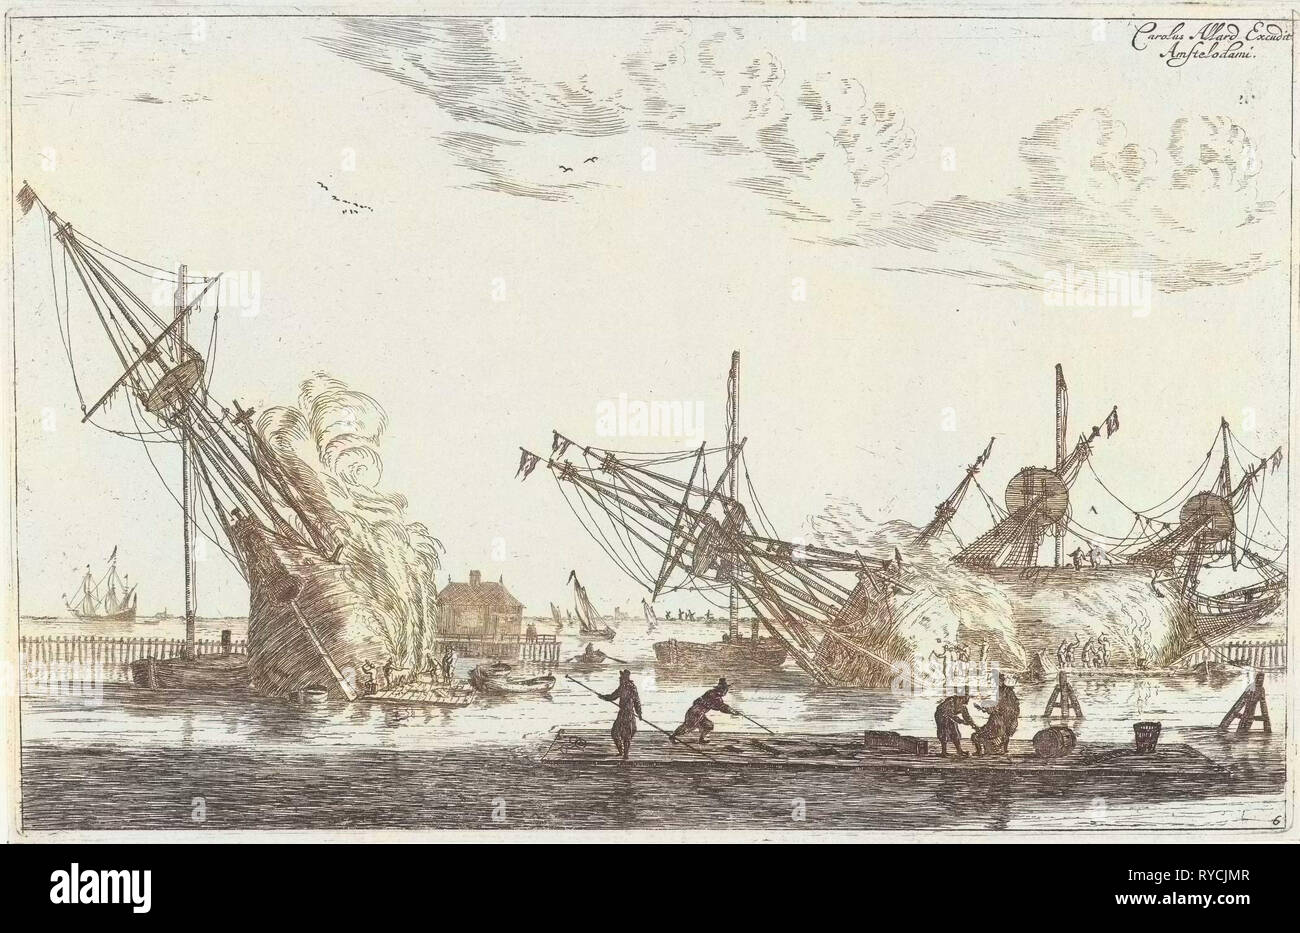 L'étanchéité de la coque des navires, flûte trois Reinier Nooms, 1650 - avant 1705, ou la flûte, flûte le fluit, est un type de navire à voile Banque D'Images